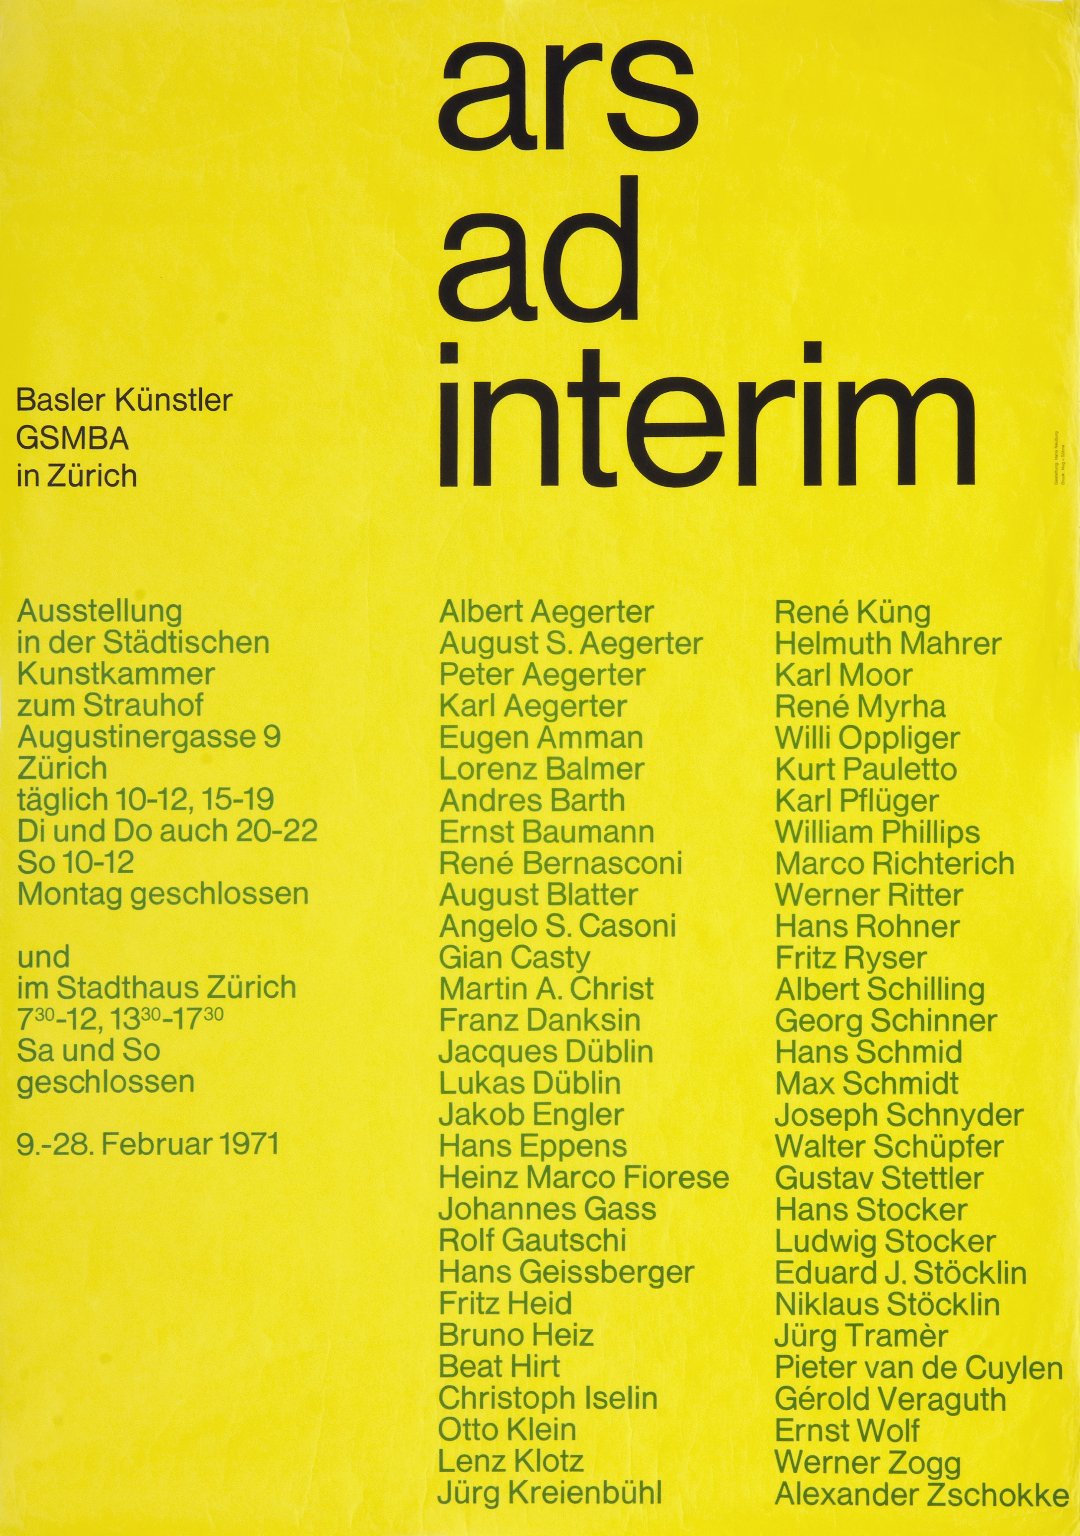 Ars ad interim Basler Künstler in Zürich